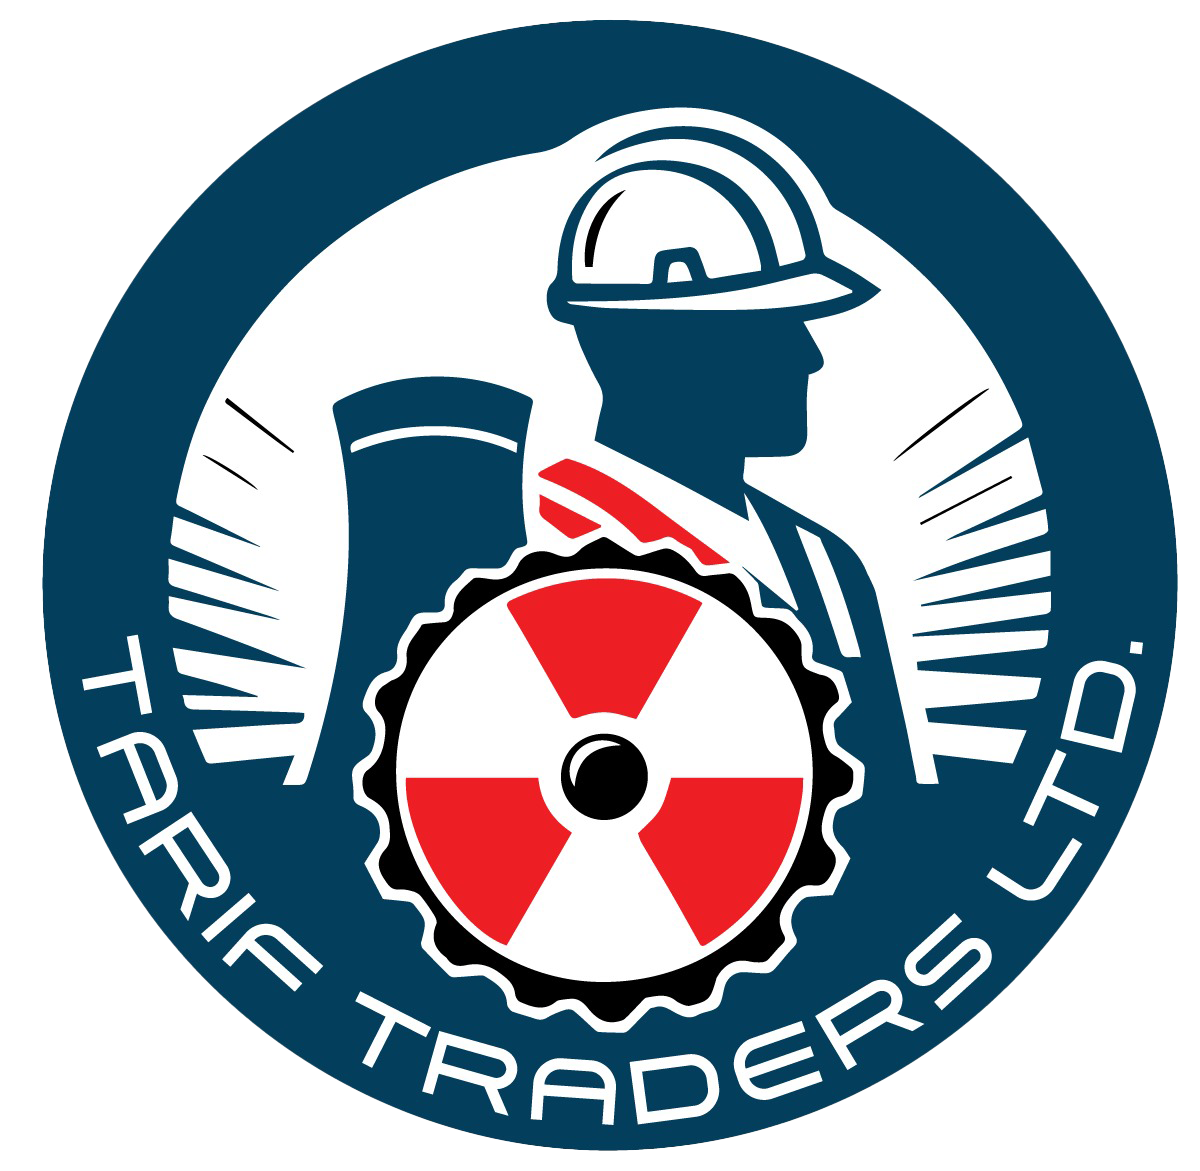 Tarif Traders